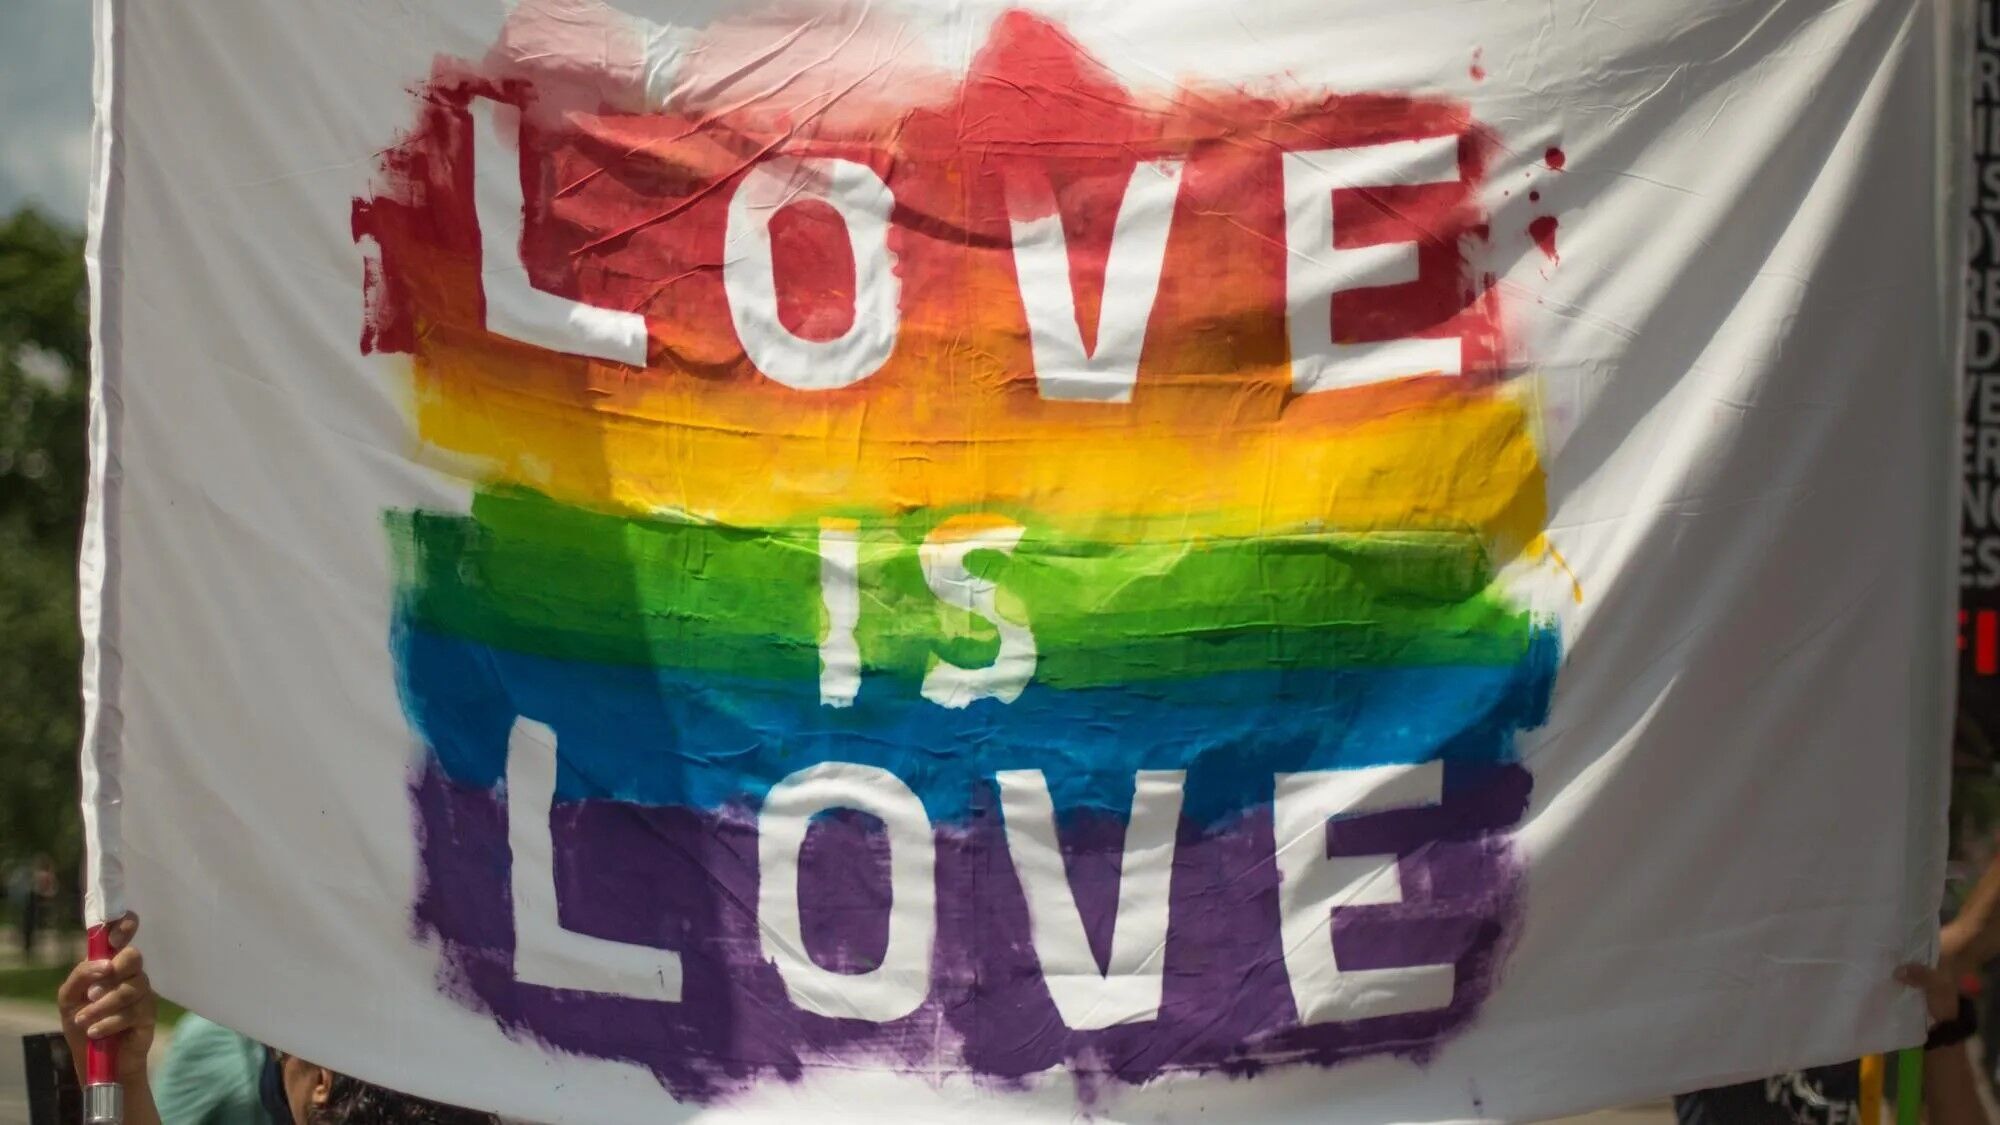 ЛГБТК+ сообщество напугано притеснениями и дискриминацией: ситуация с гомофобией в Турции становится хуже